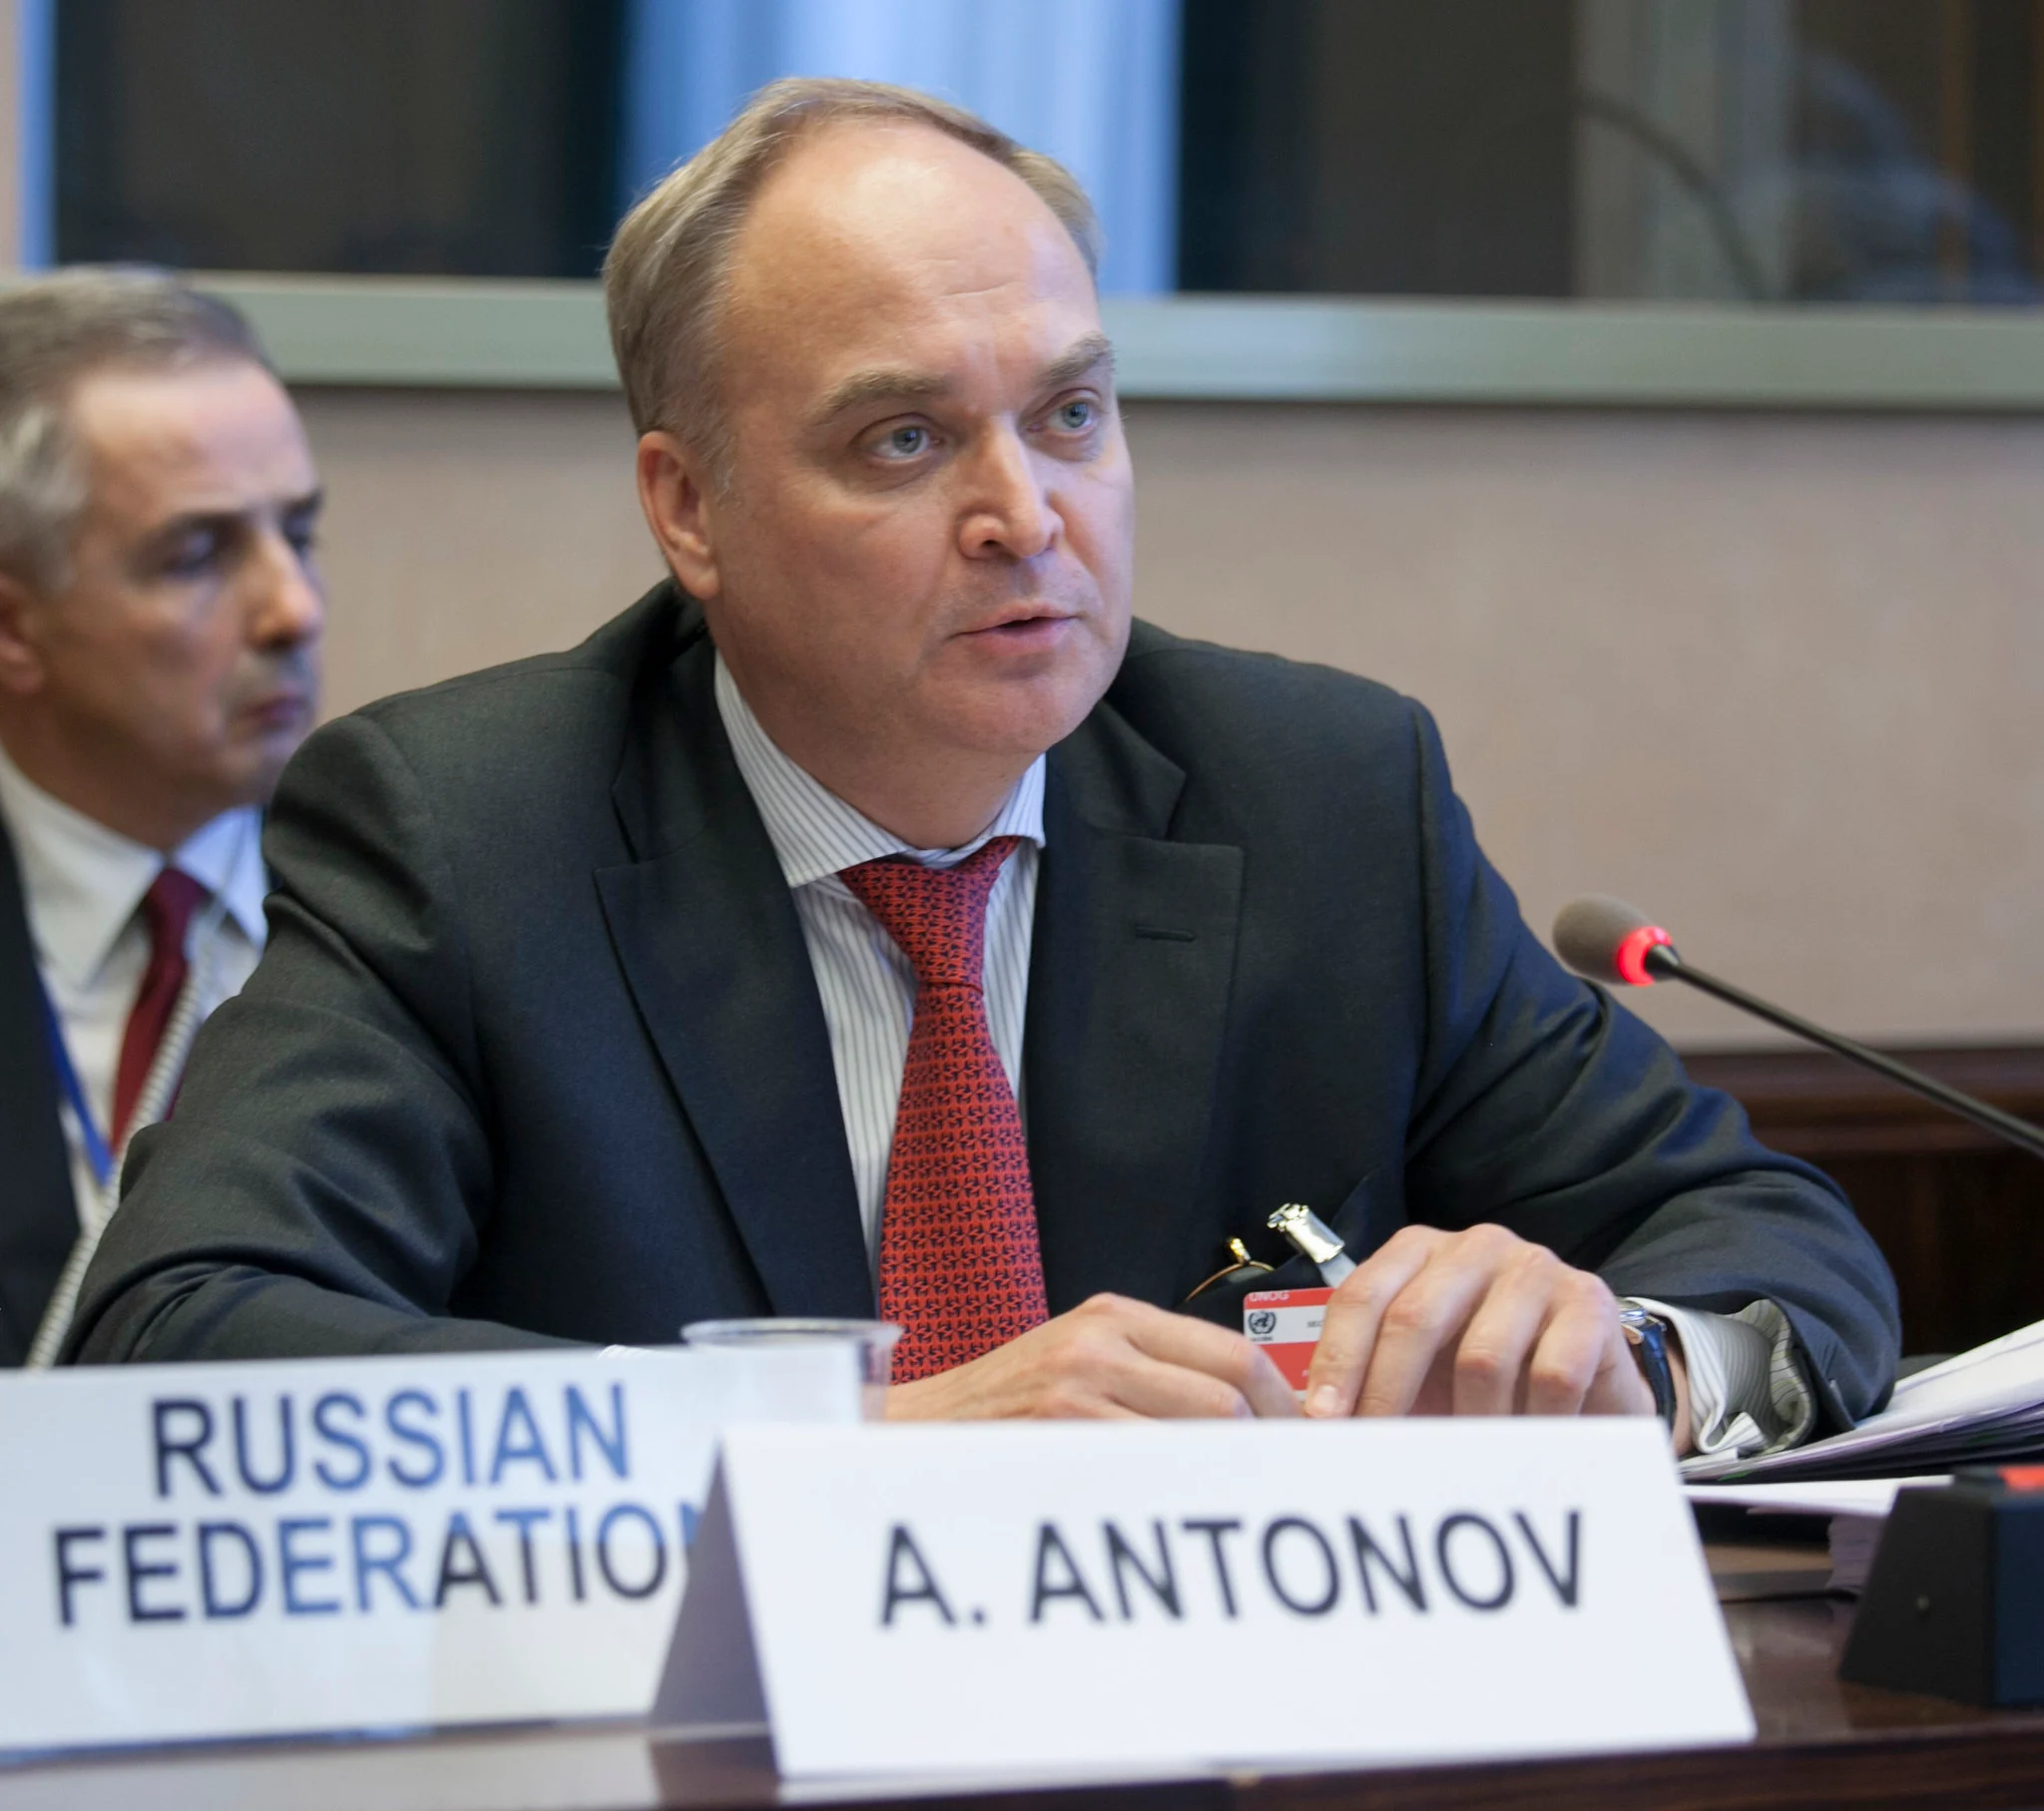 L'ambasciatore russo negli Usa: "L'Occidente spinge l'umanità all'Armageddon"